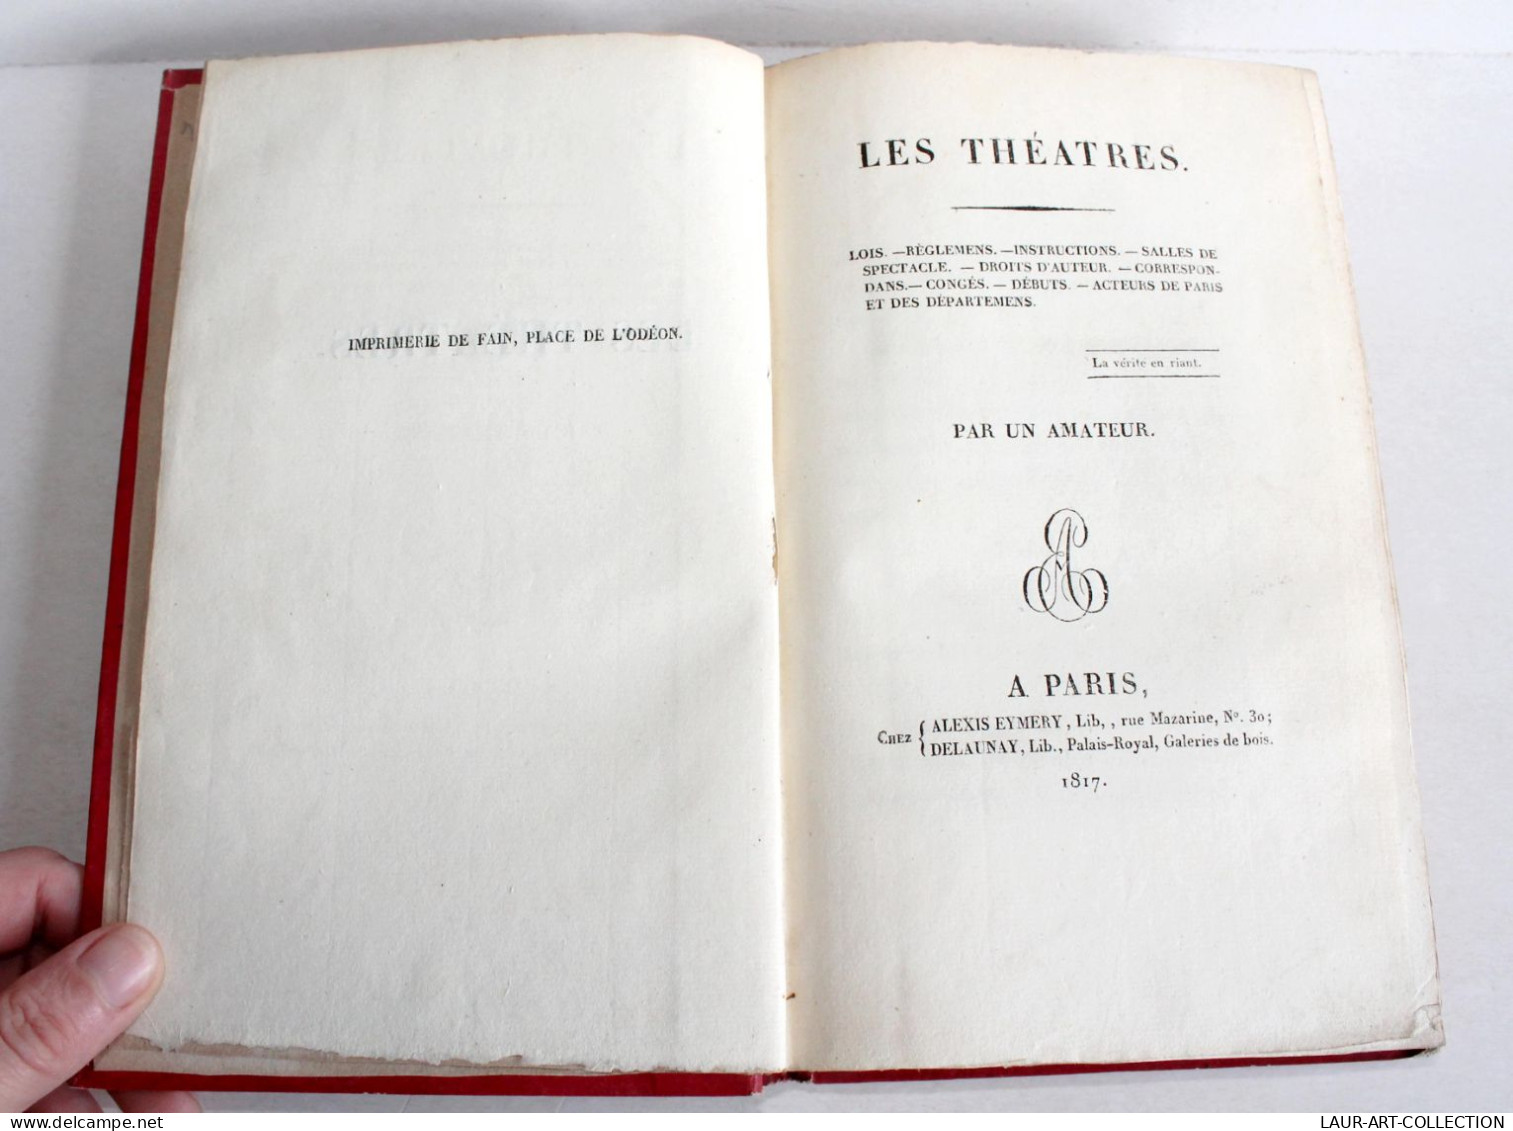 RARE! LES THEATRES, LOIS REGLEMENT INSTRUCTIONS DROIT AUTEUR Par UN AMATEUR 1817 / ANCIEN LIVRE XIXe SIECLE (2603.113) - French Authors